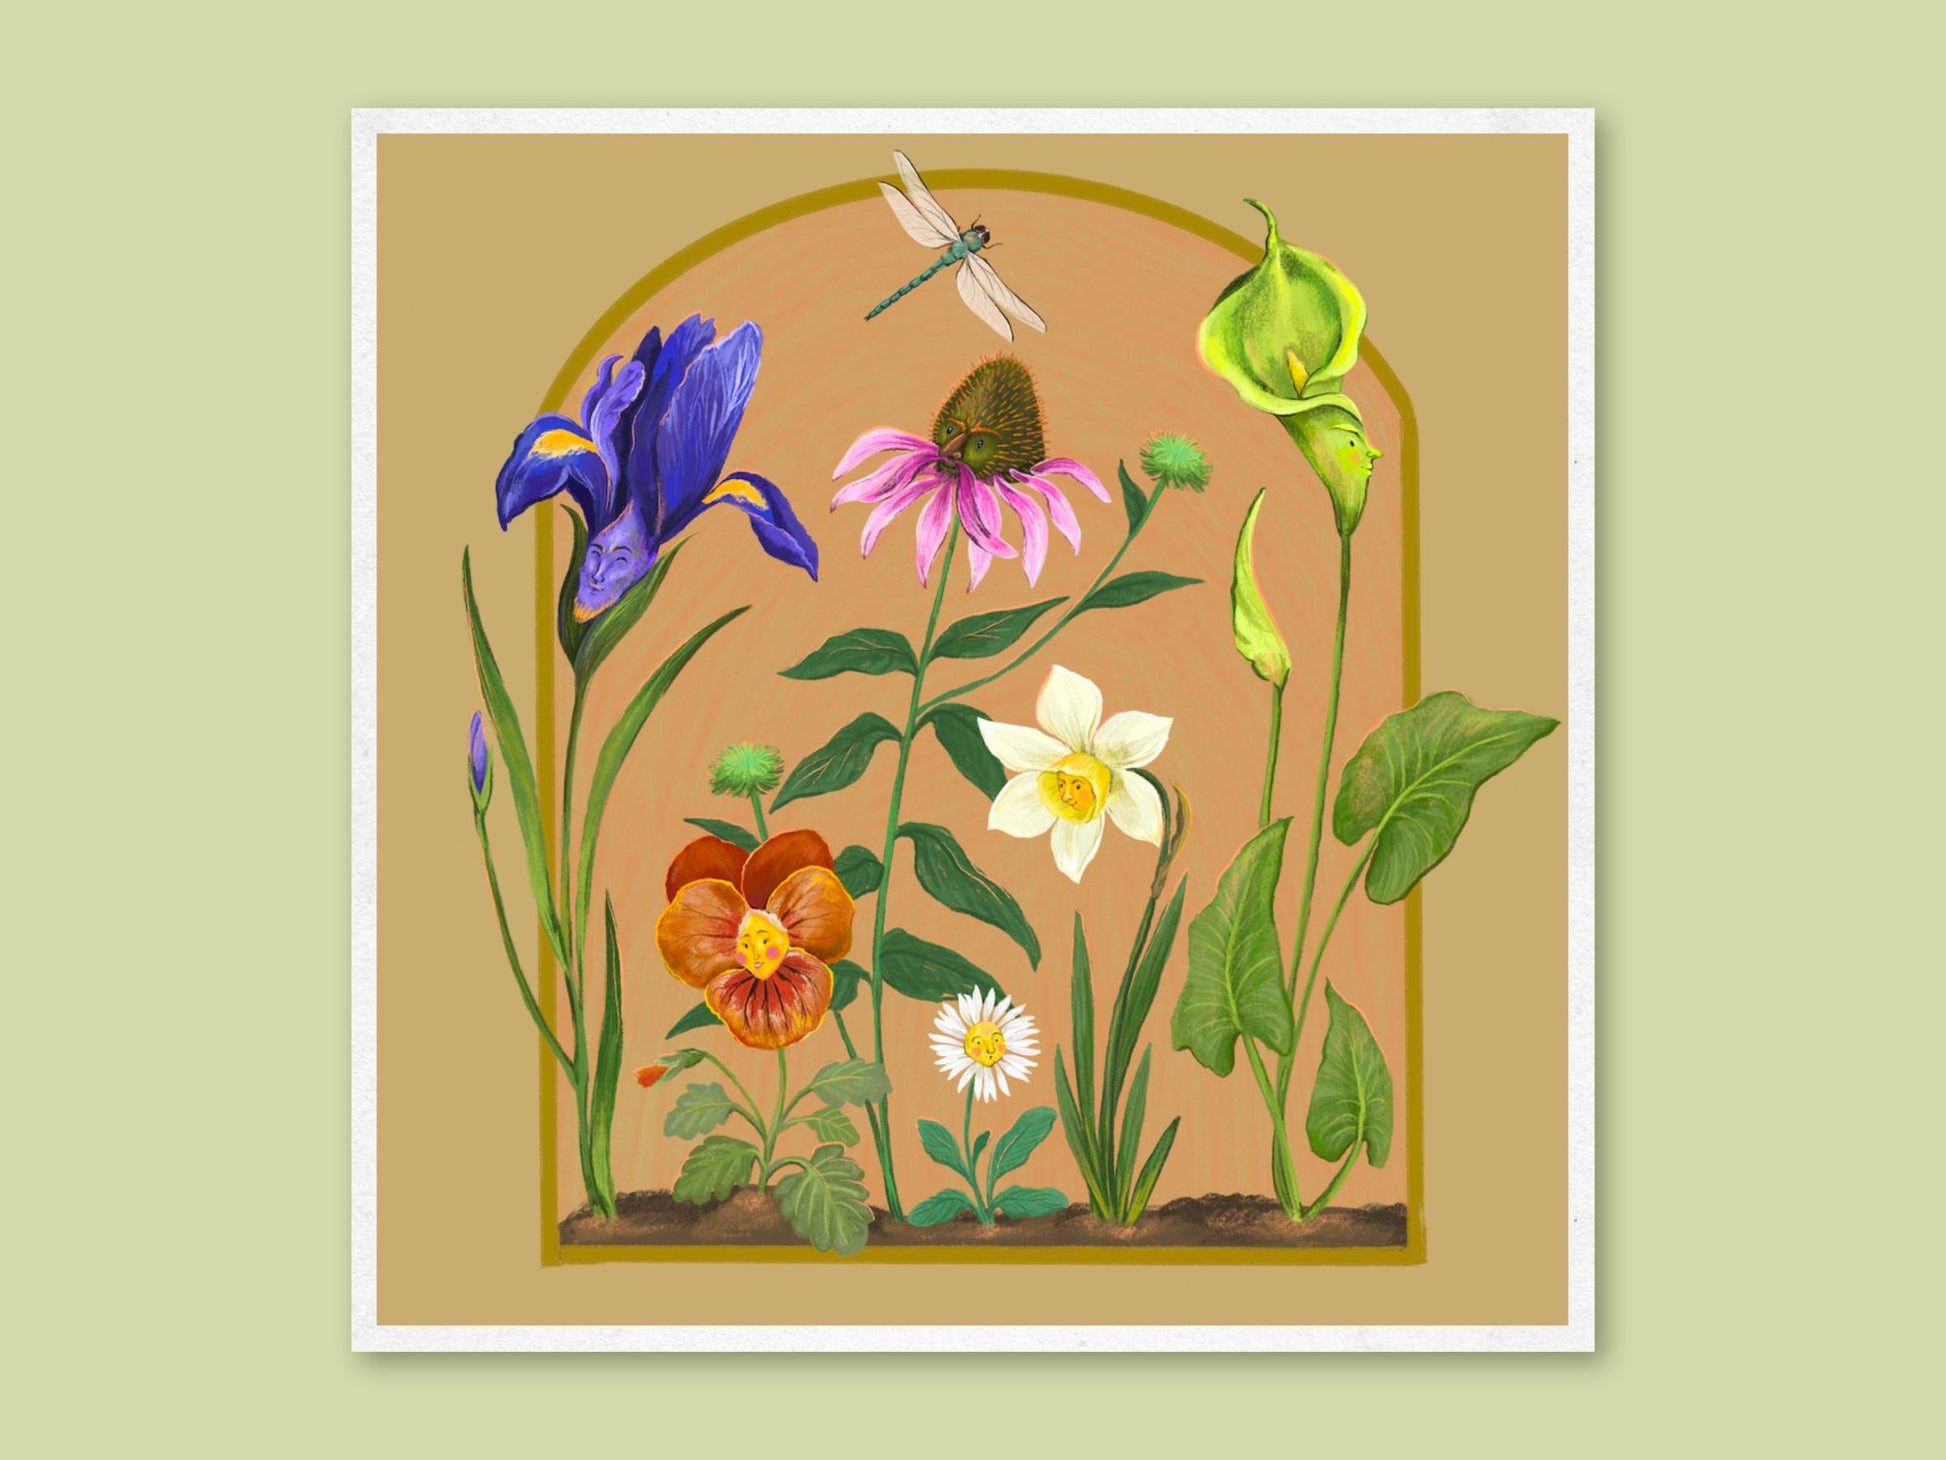 Anna Seed Art | Art Print - Garden View - Fun quirky illustration, wall art